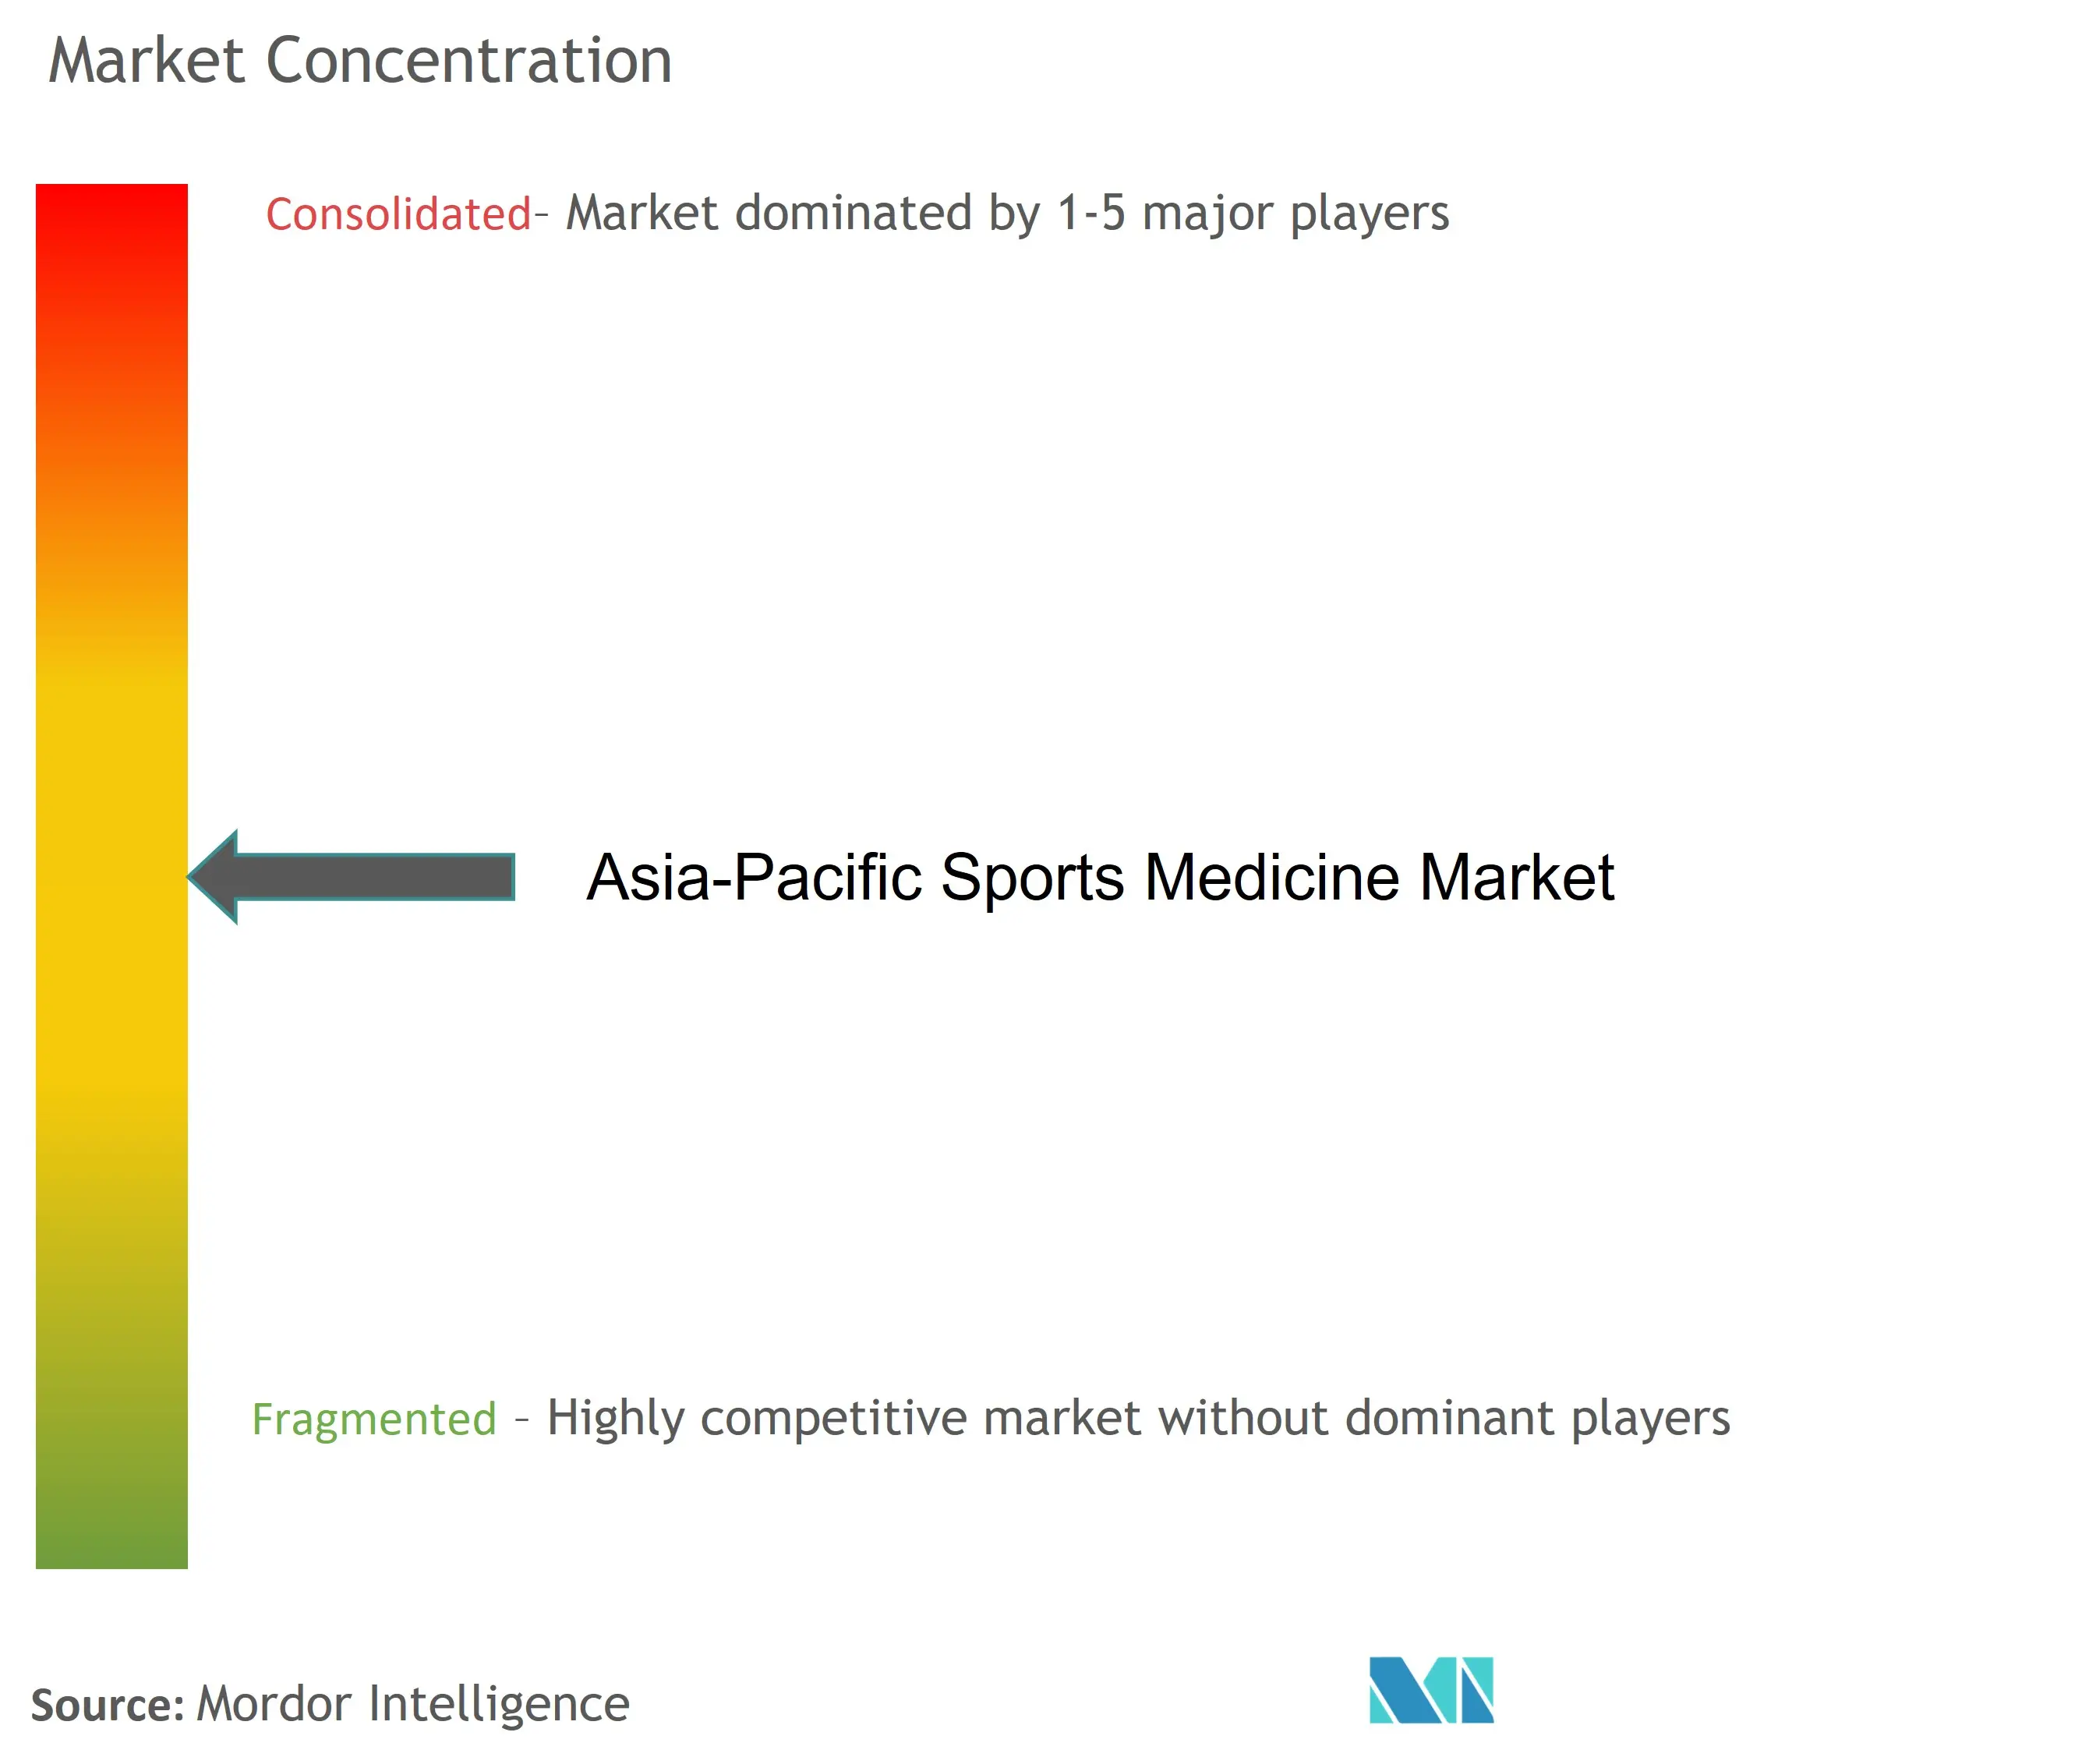 Marktkonzentration für Sportmedizin im asiatisch-pazifischen Raum